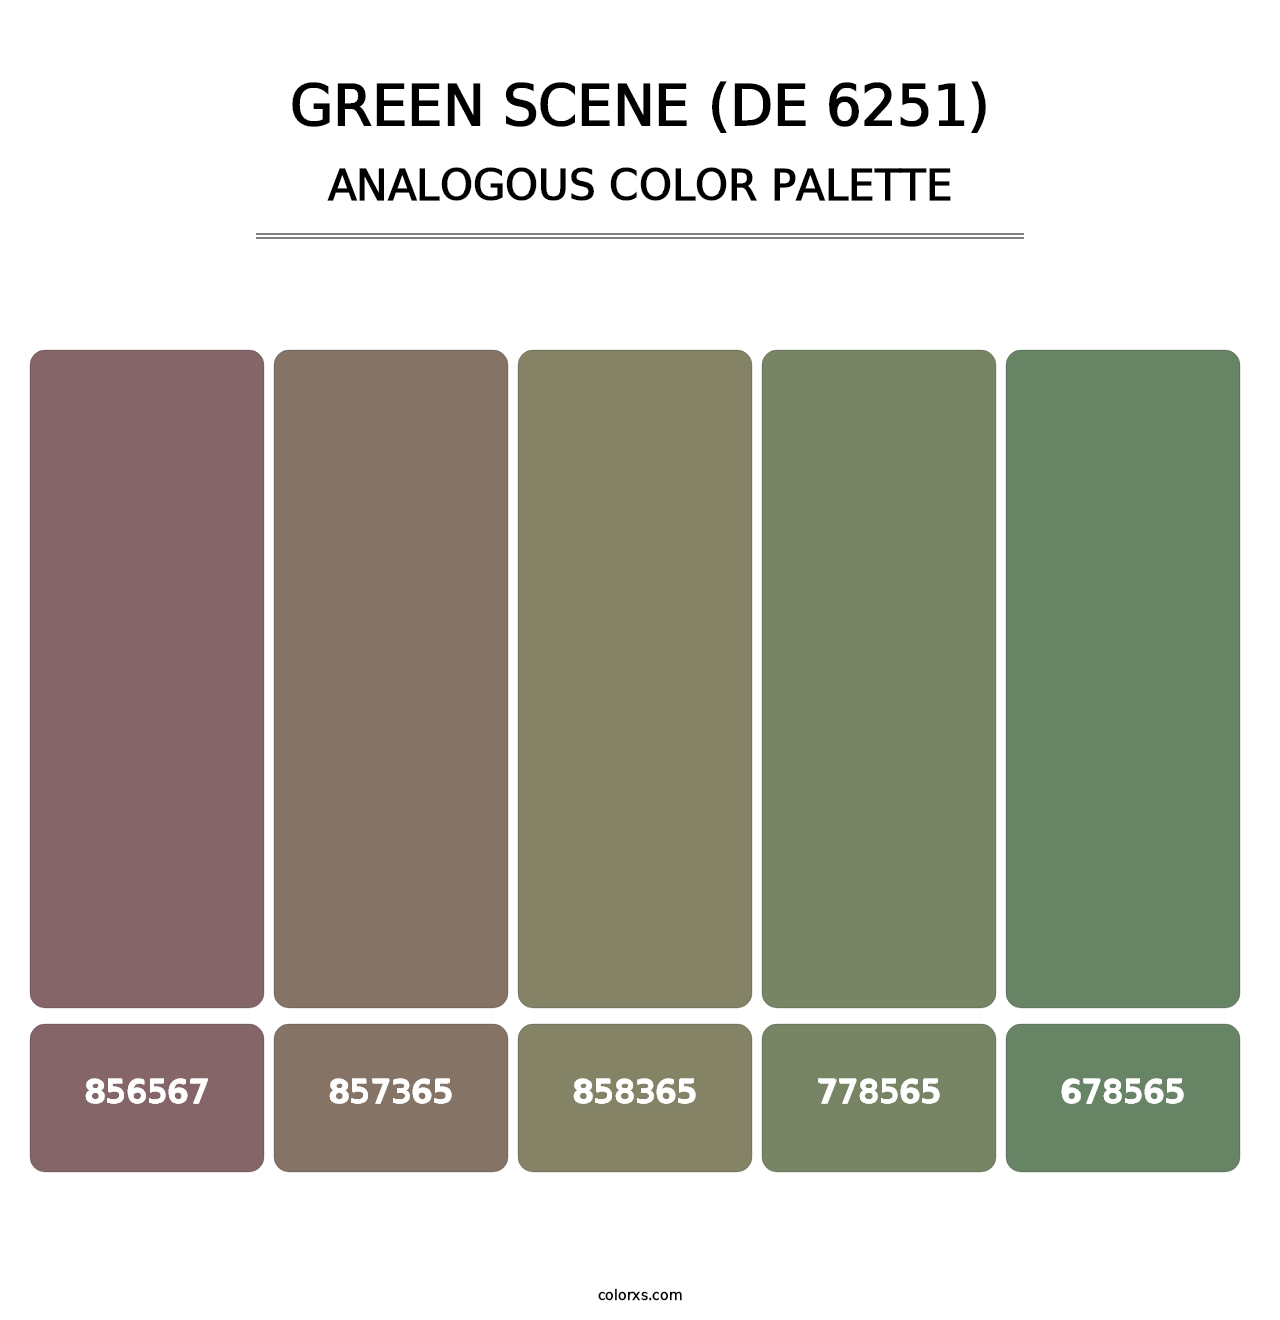 Green Scene (DE 6251) - Analogous Color Palette